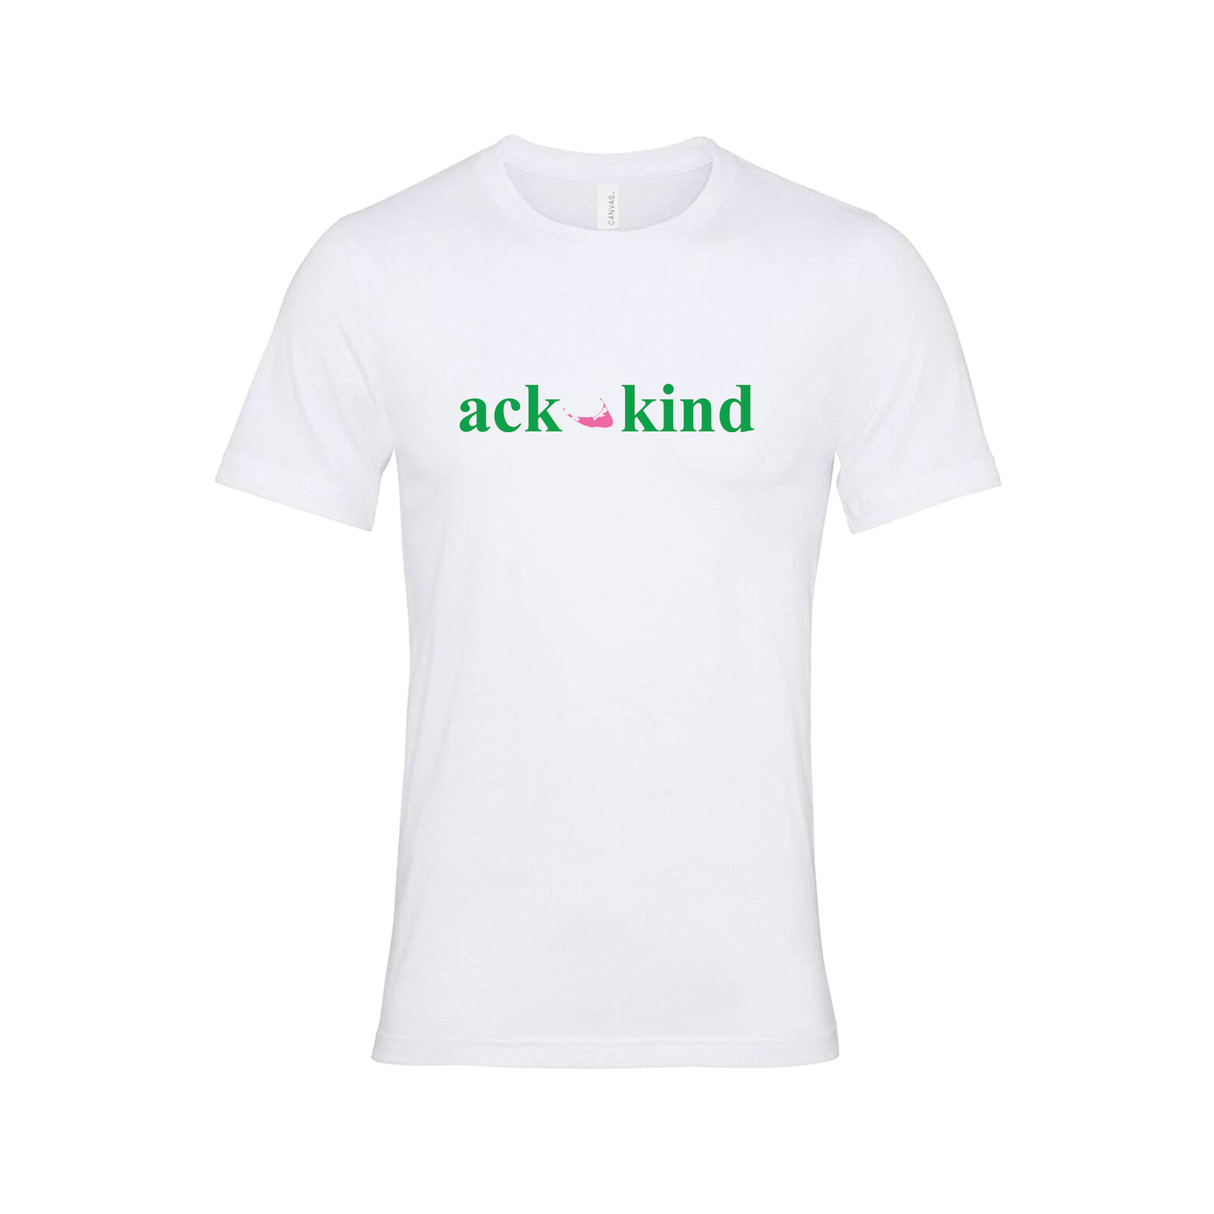 Ack Kind (Green Logo) Short Sleeve Tee Shirt